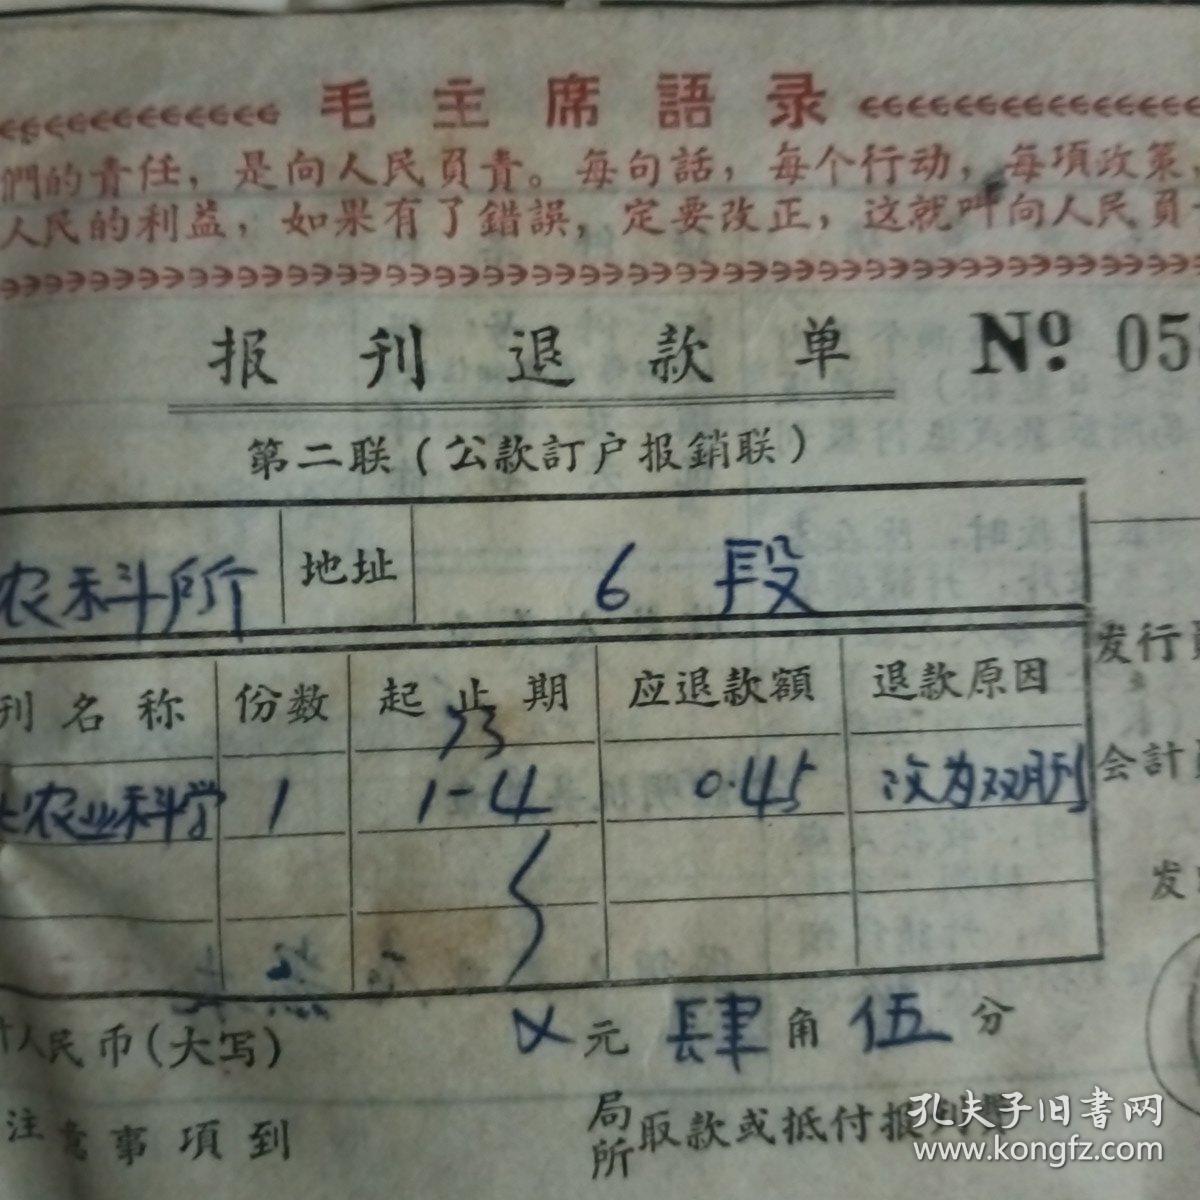 1973年毛主席语录订阅报刊款日报单12张，1973年毛主席语录报刊退款单5张，南京市公共汽车车票毛主席语录最高指示为人民服务21张（7种式样），最高指示销货发票一张（油印版）